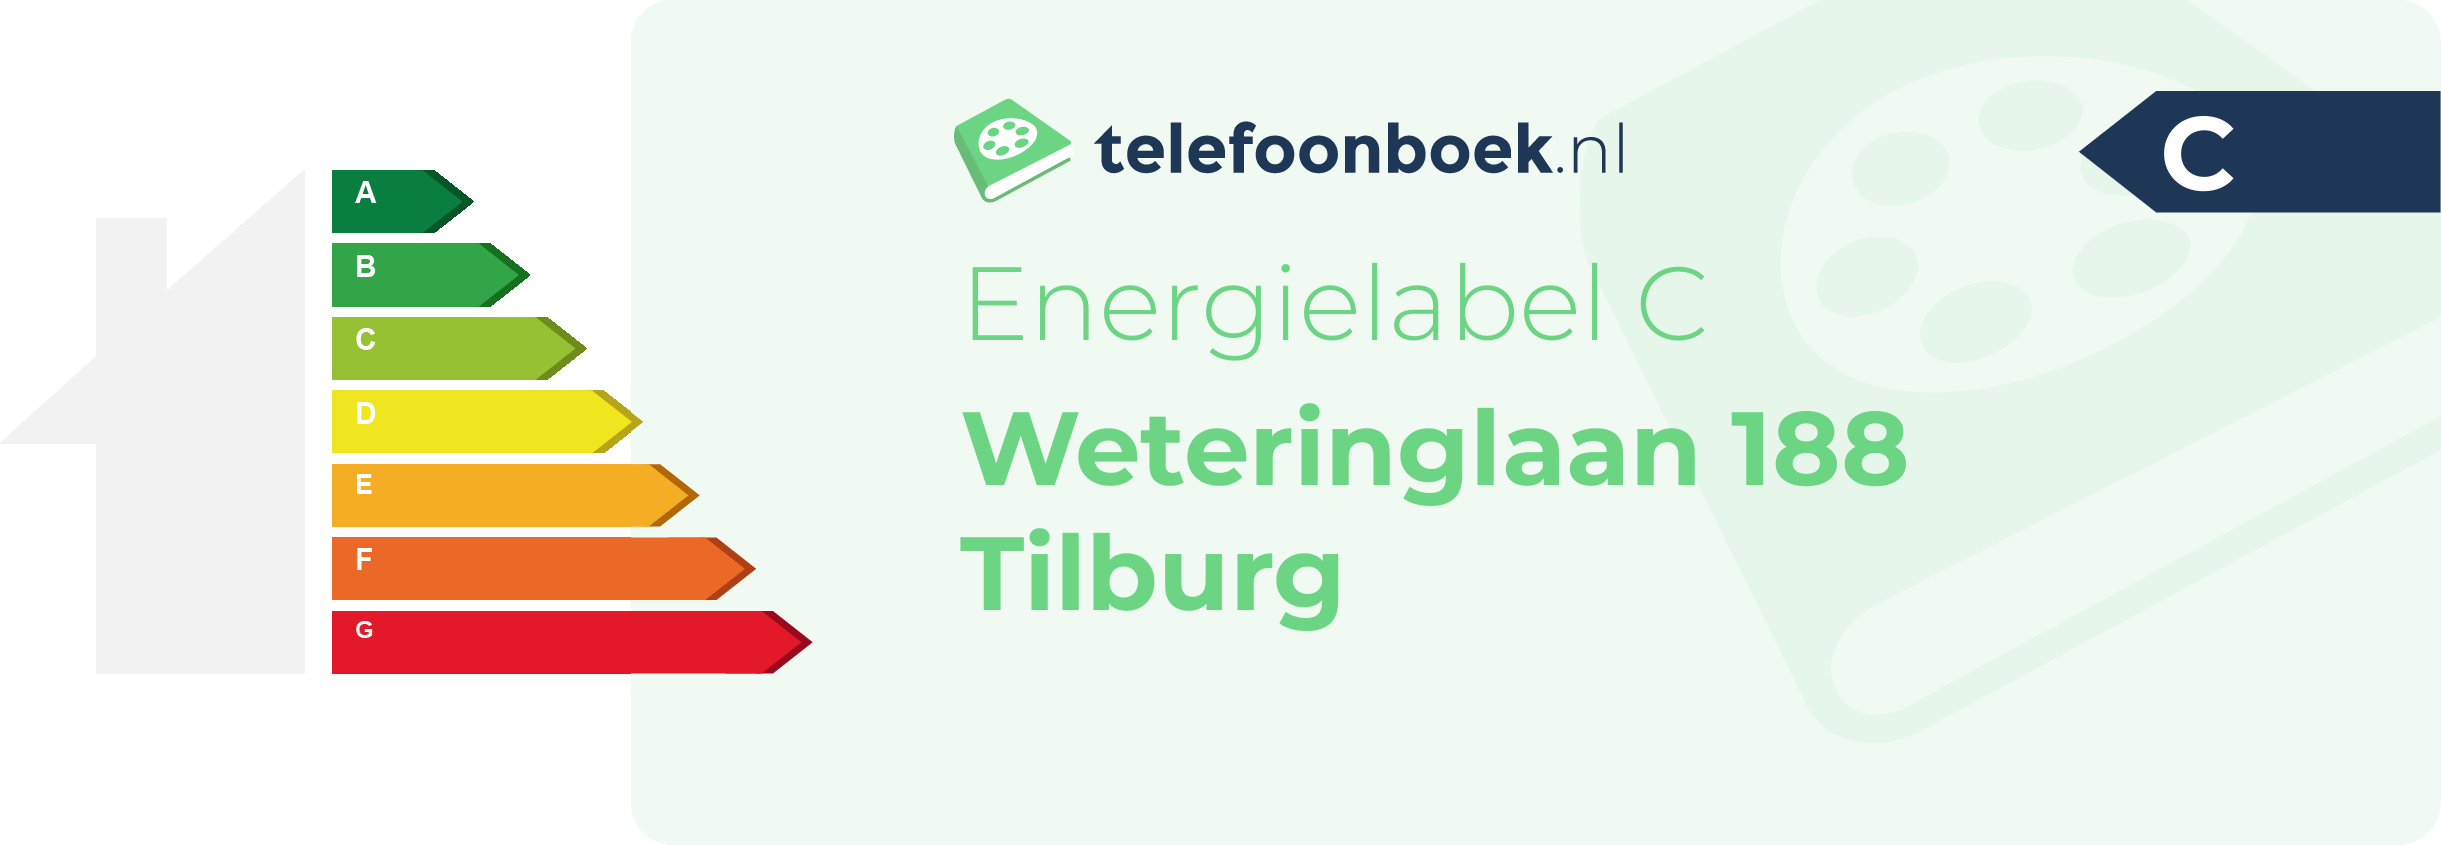 Energielabel Weteringlaan 188 Tilburg